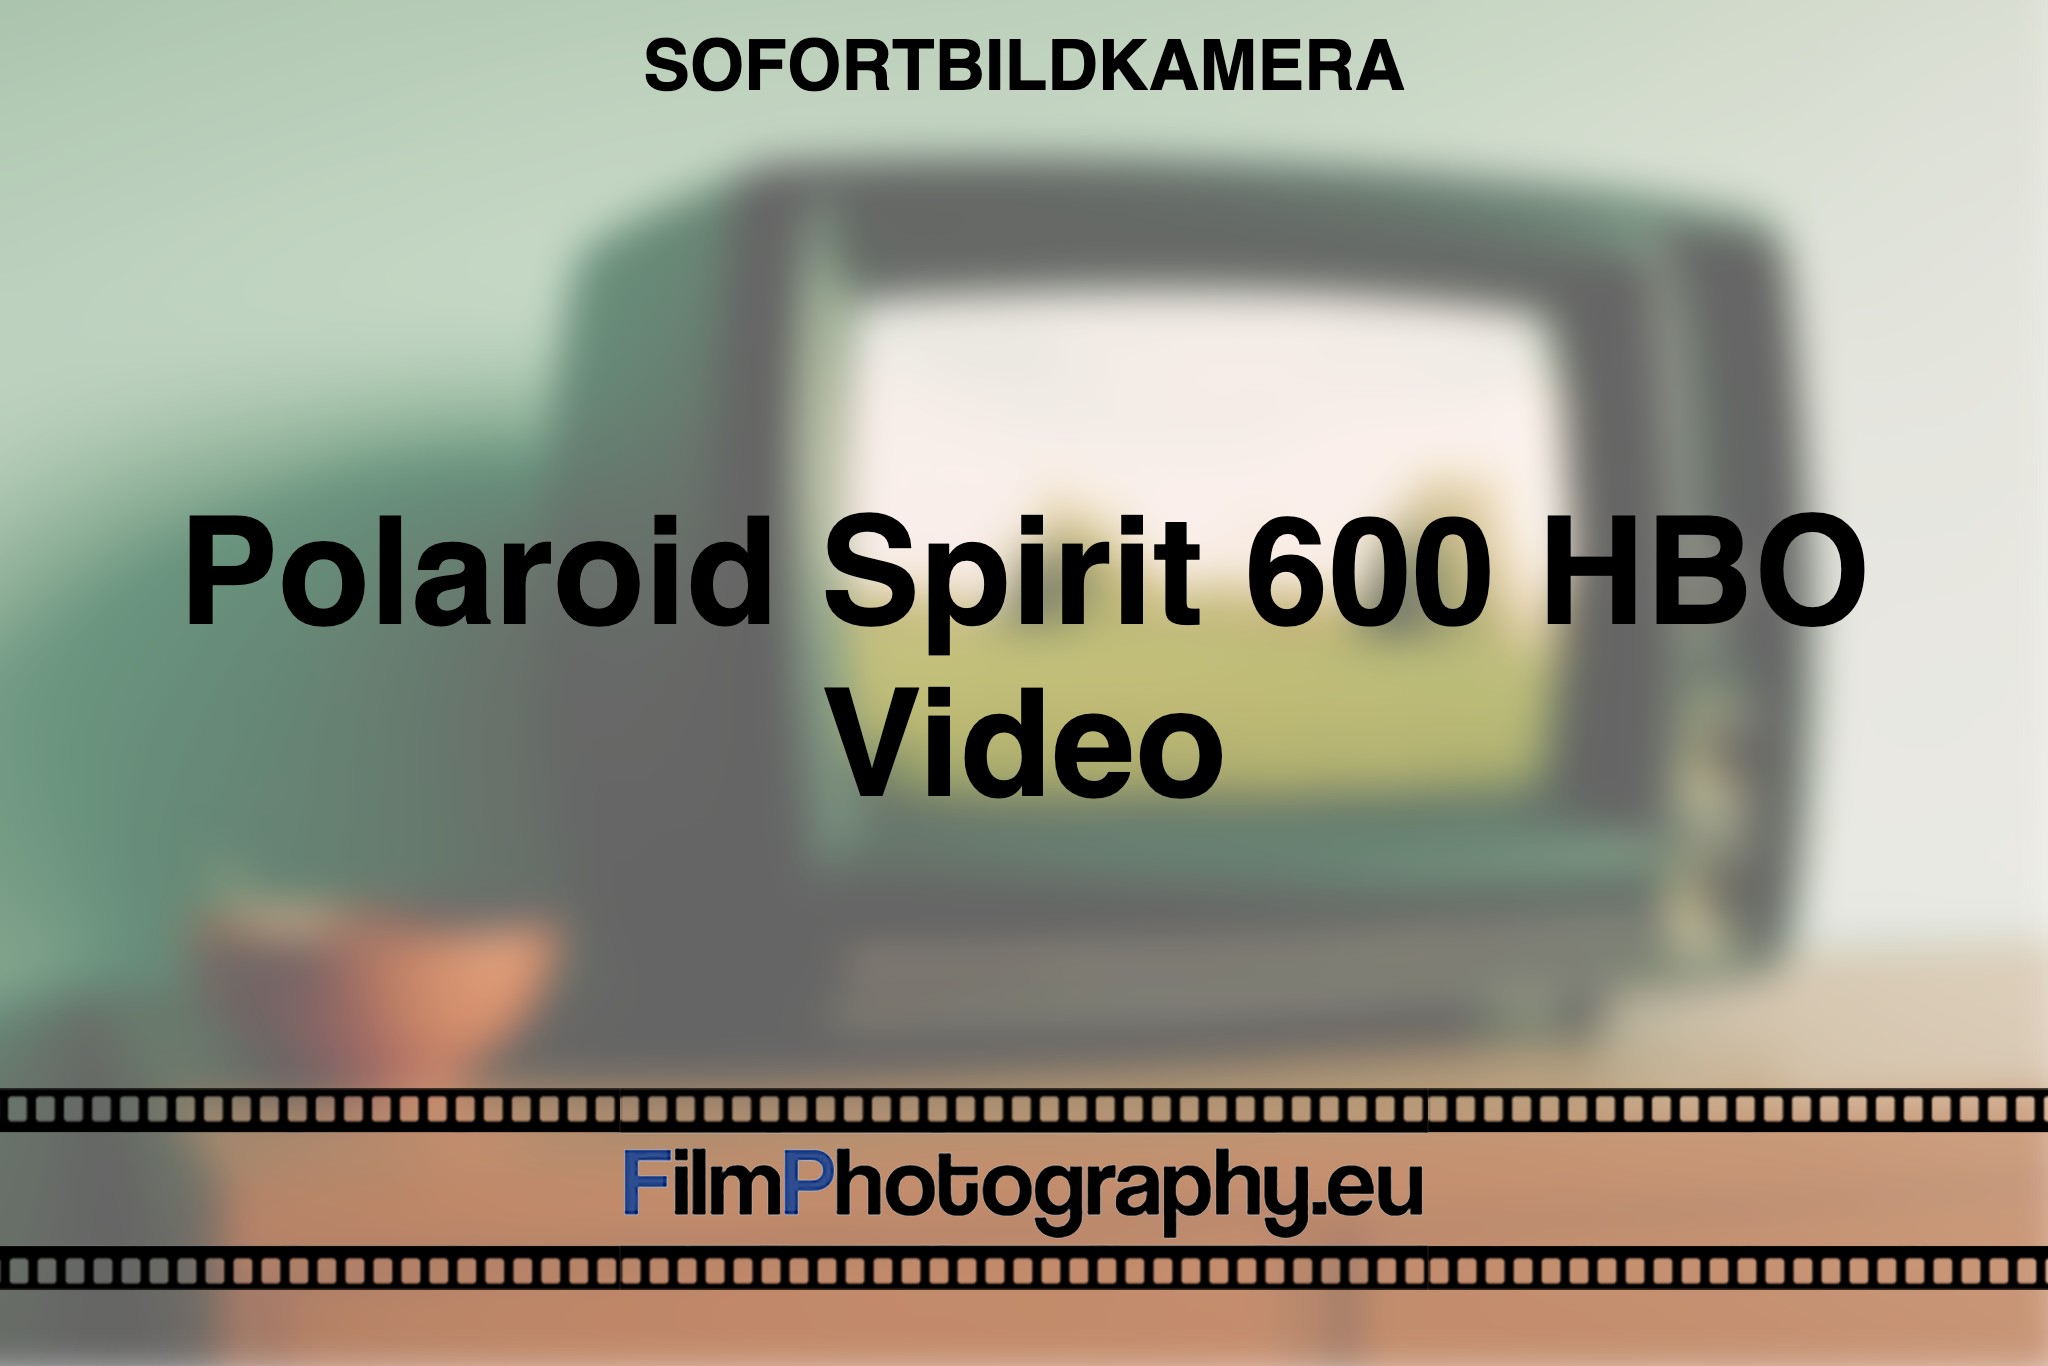 polaroid-spirit-600-hbo-video-sofortbildkamera-fp-bnv